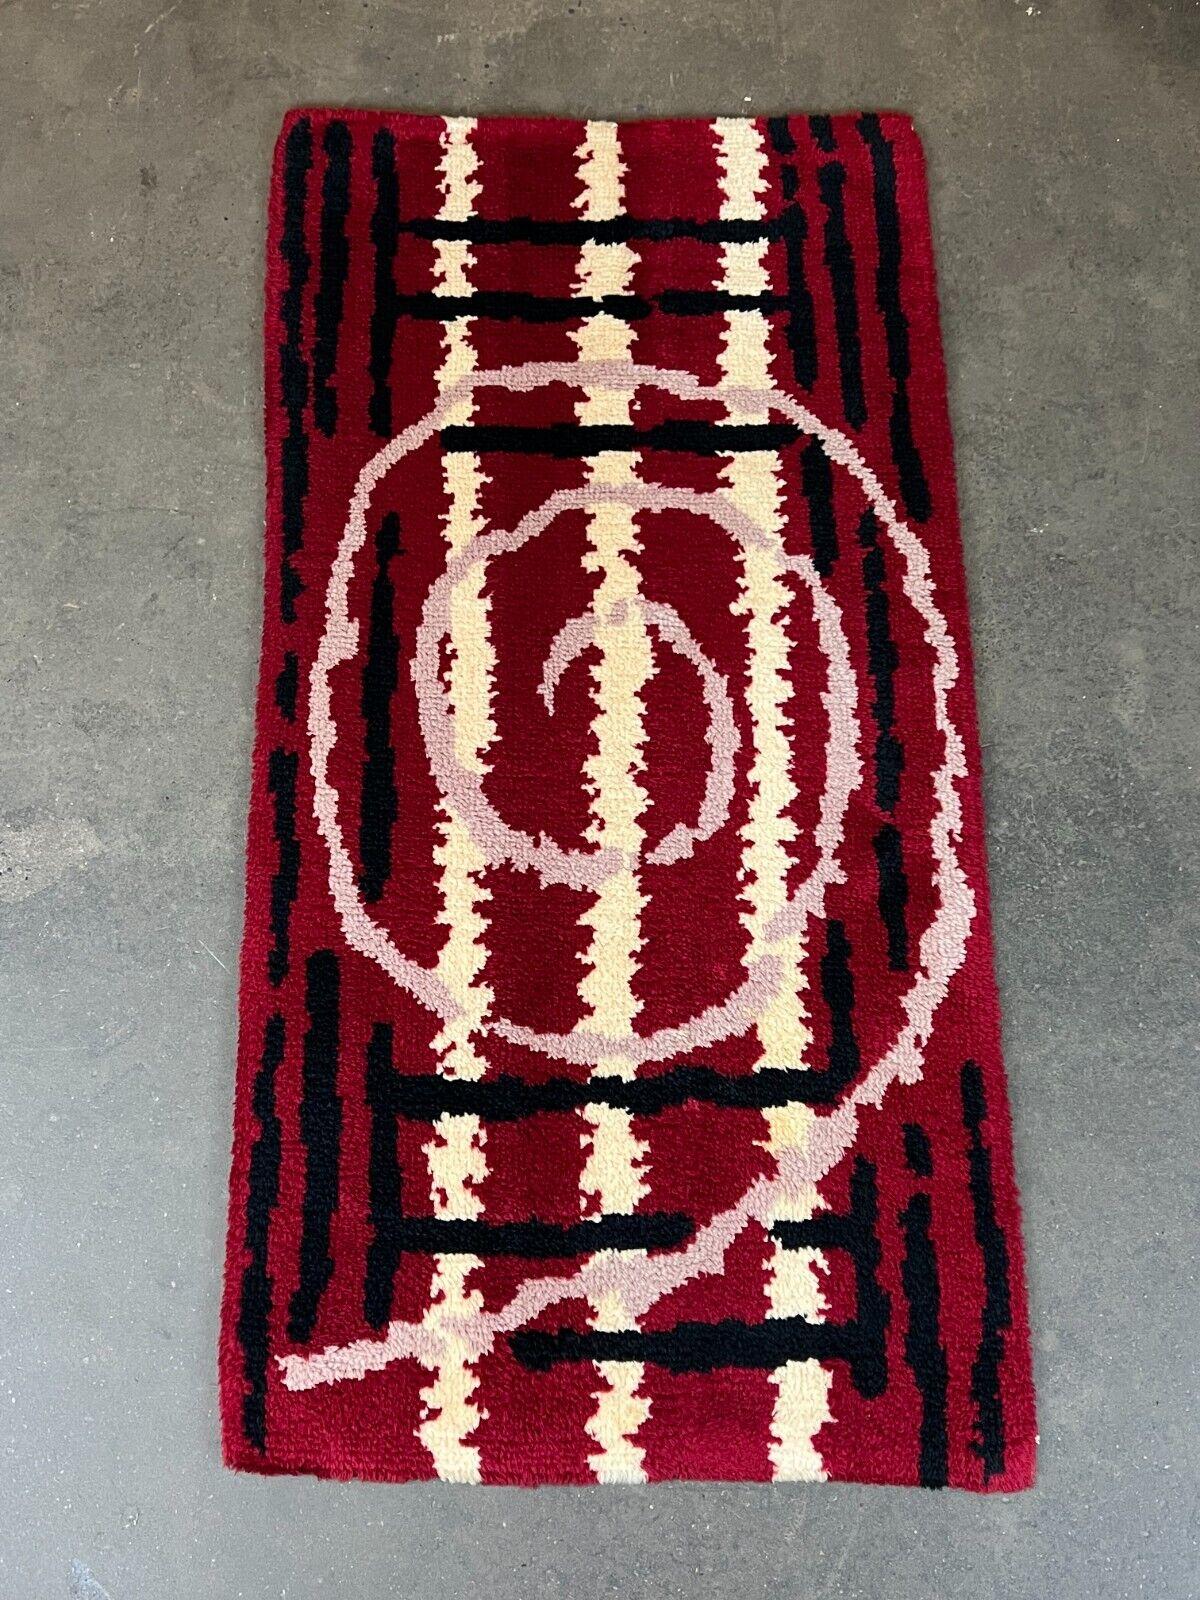 60s carpet